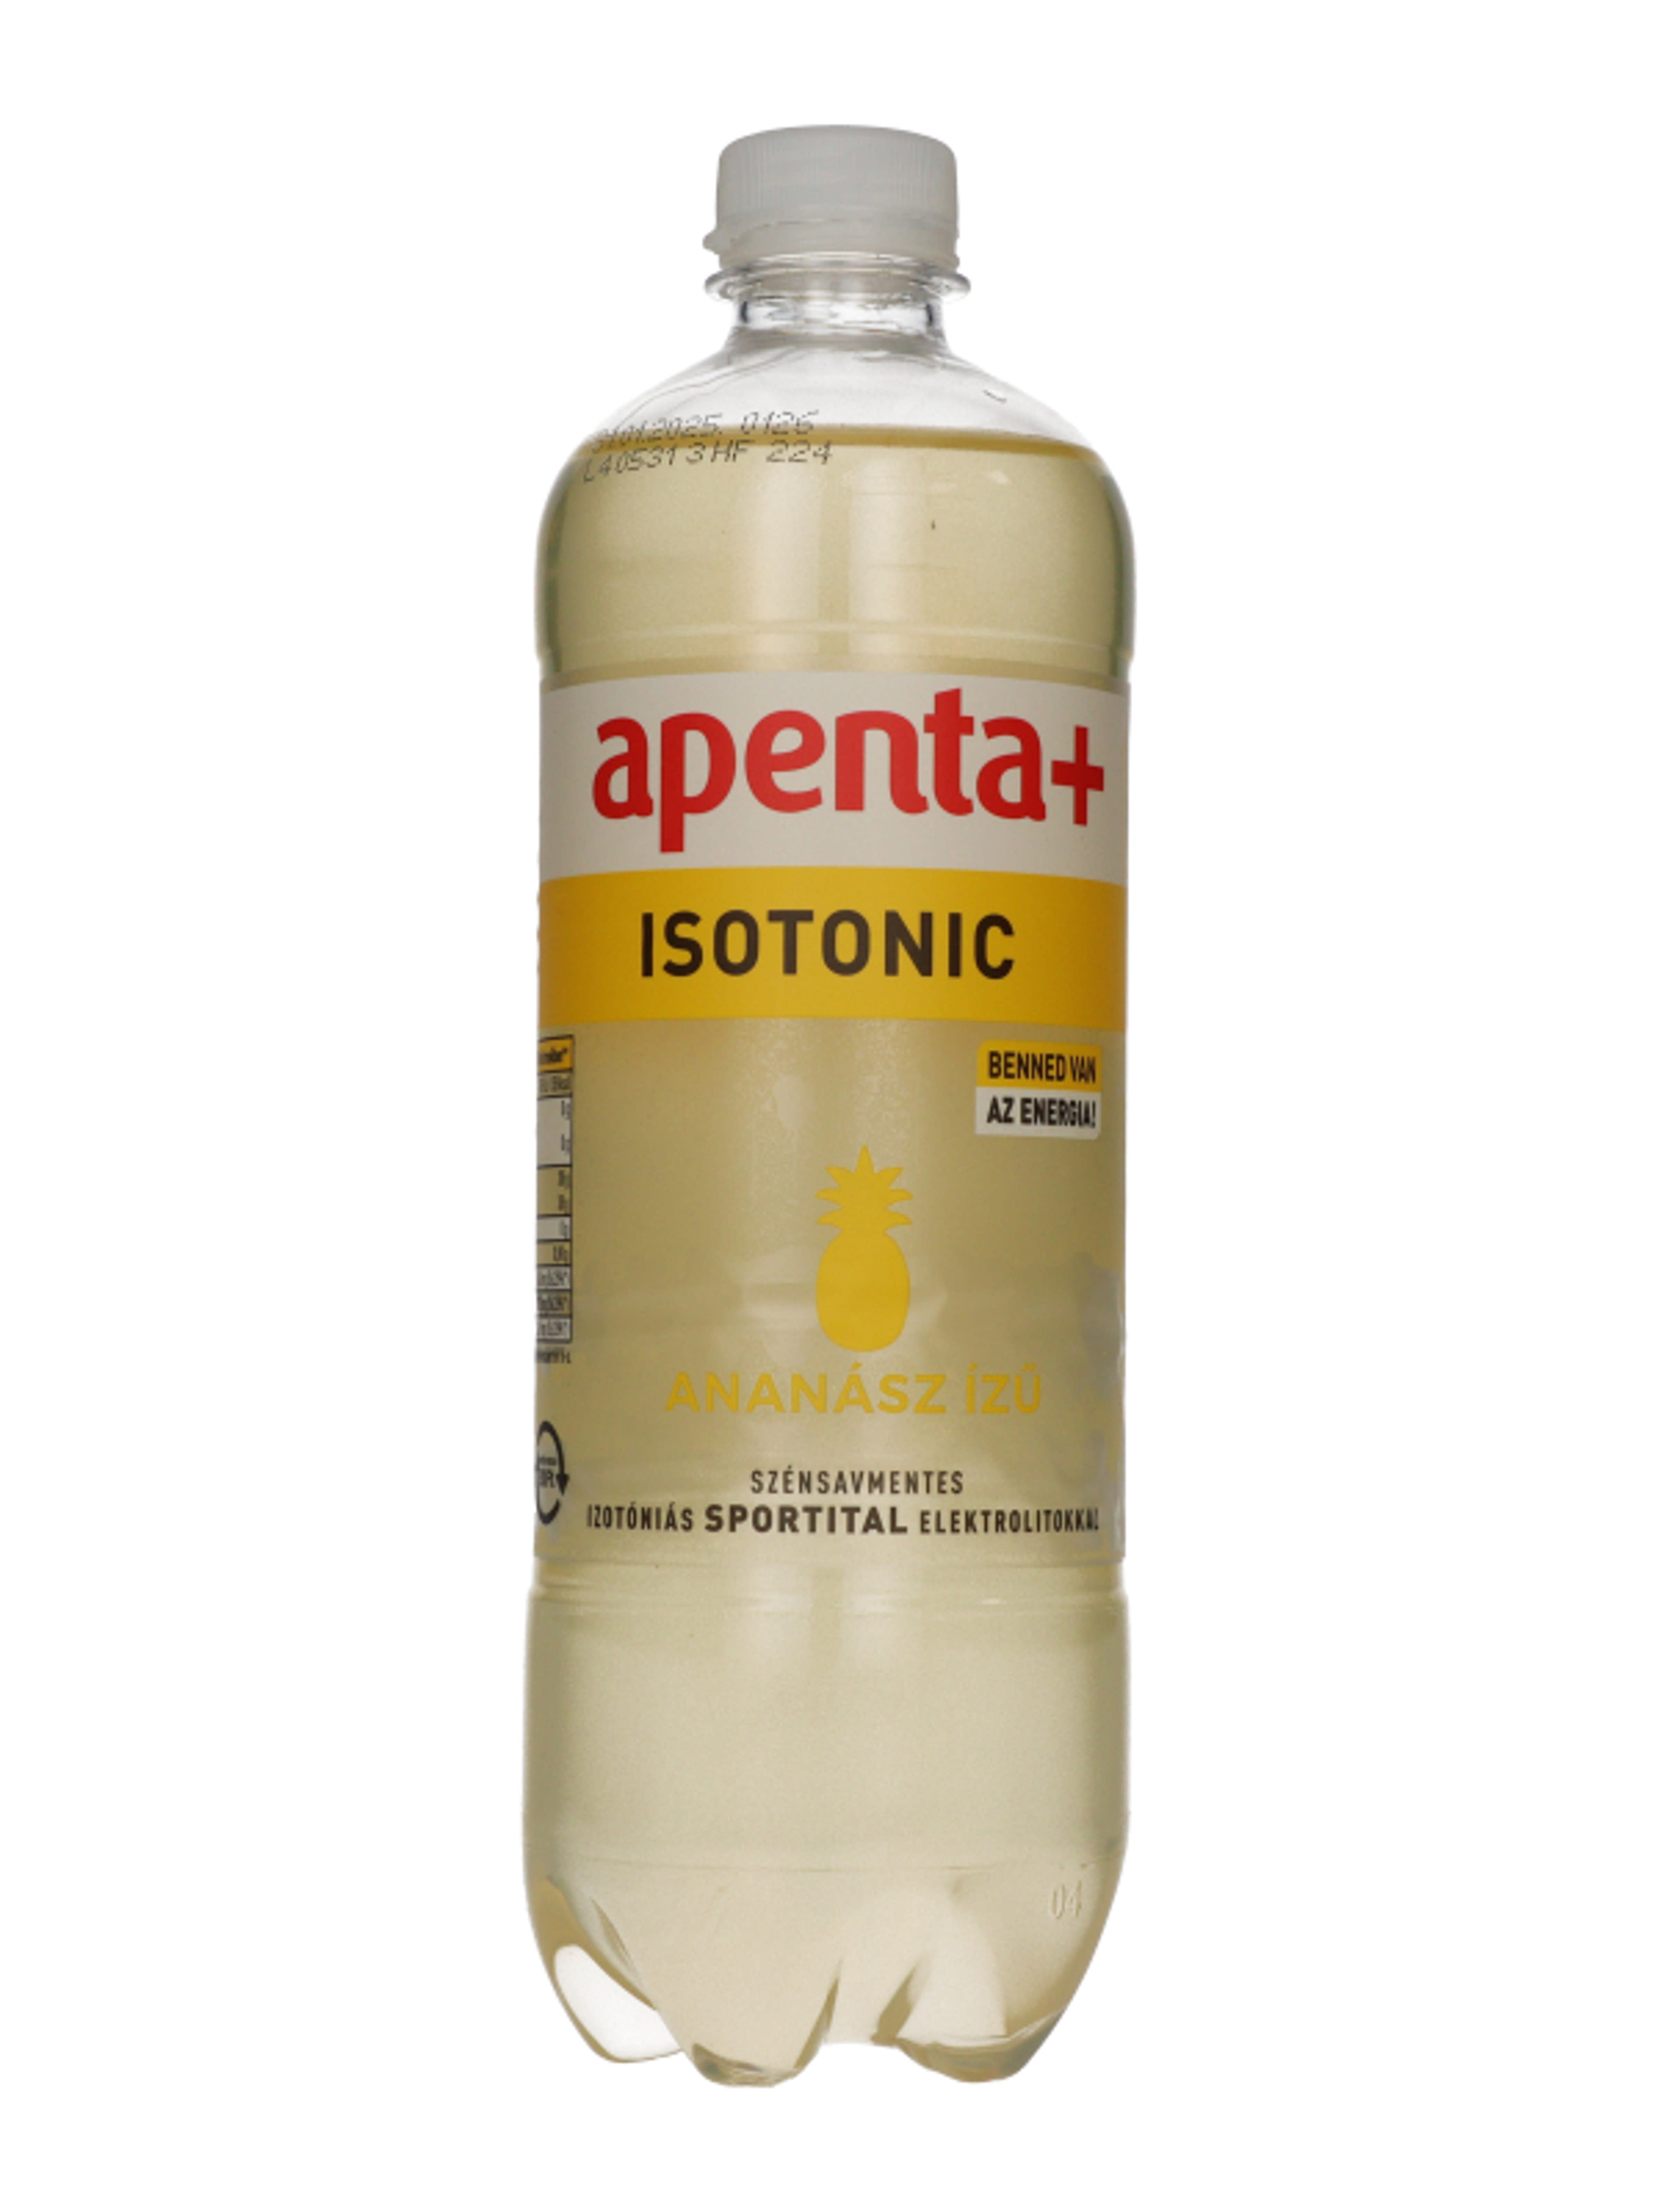 Apenta+ Isotonic ananász ízű szénsavmentes izotóniás sportital elektrolitokkal 750 ml